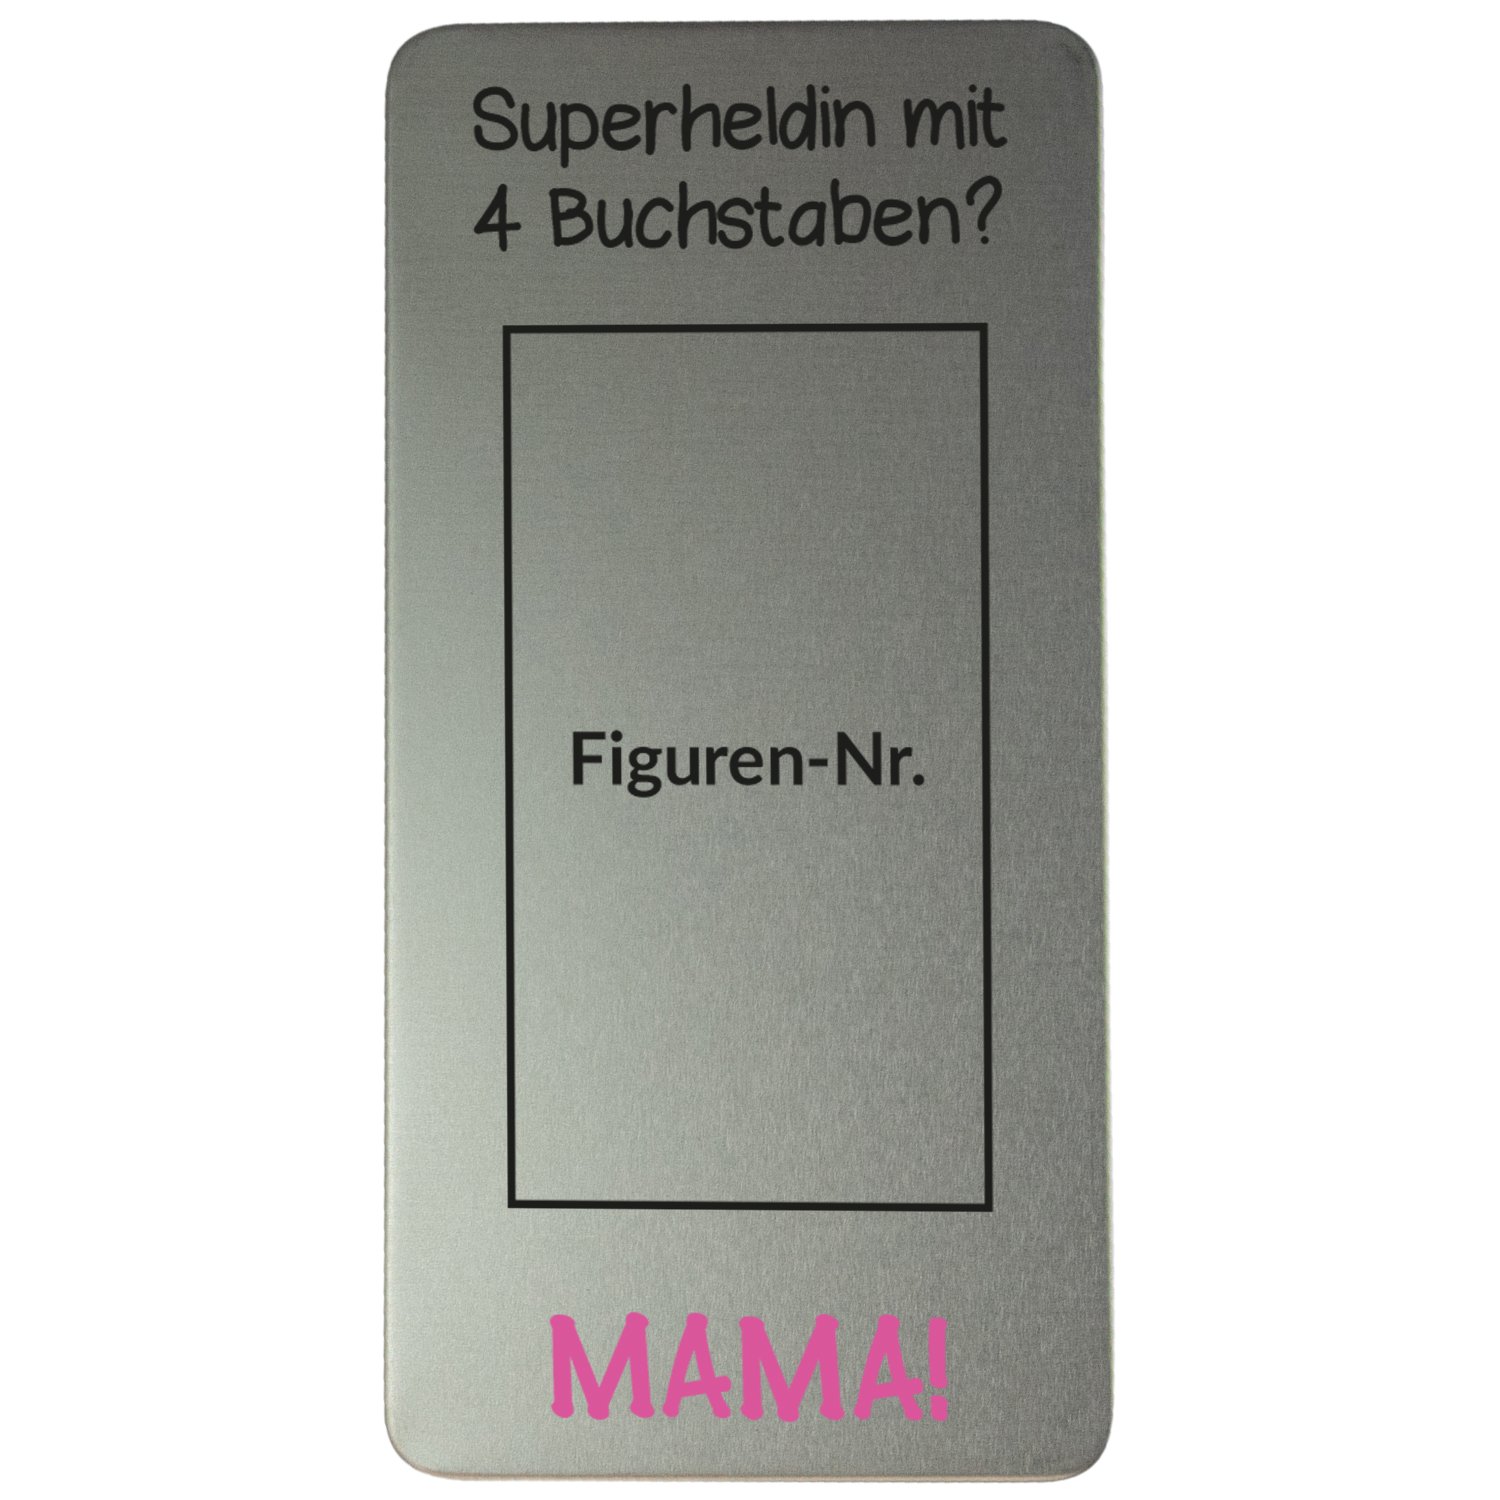 Schokoladenbox - Superheldin mit 4 Buchstaben - MAMA